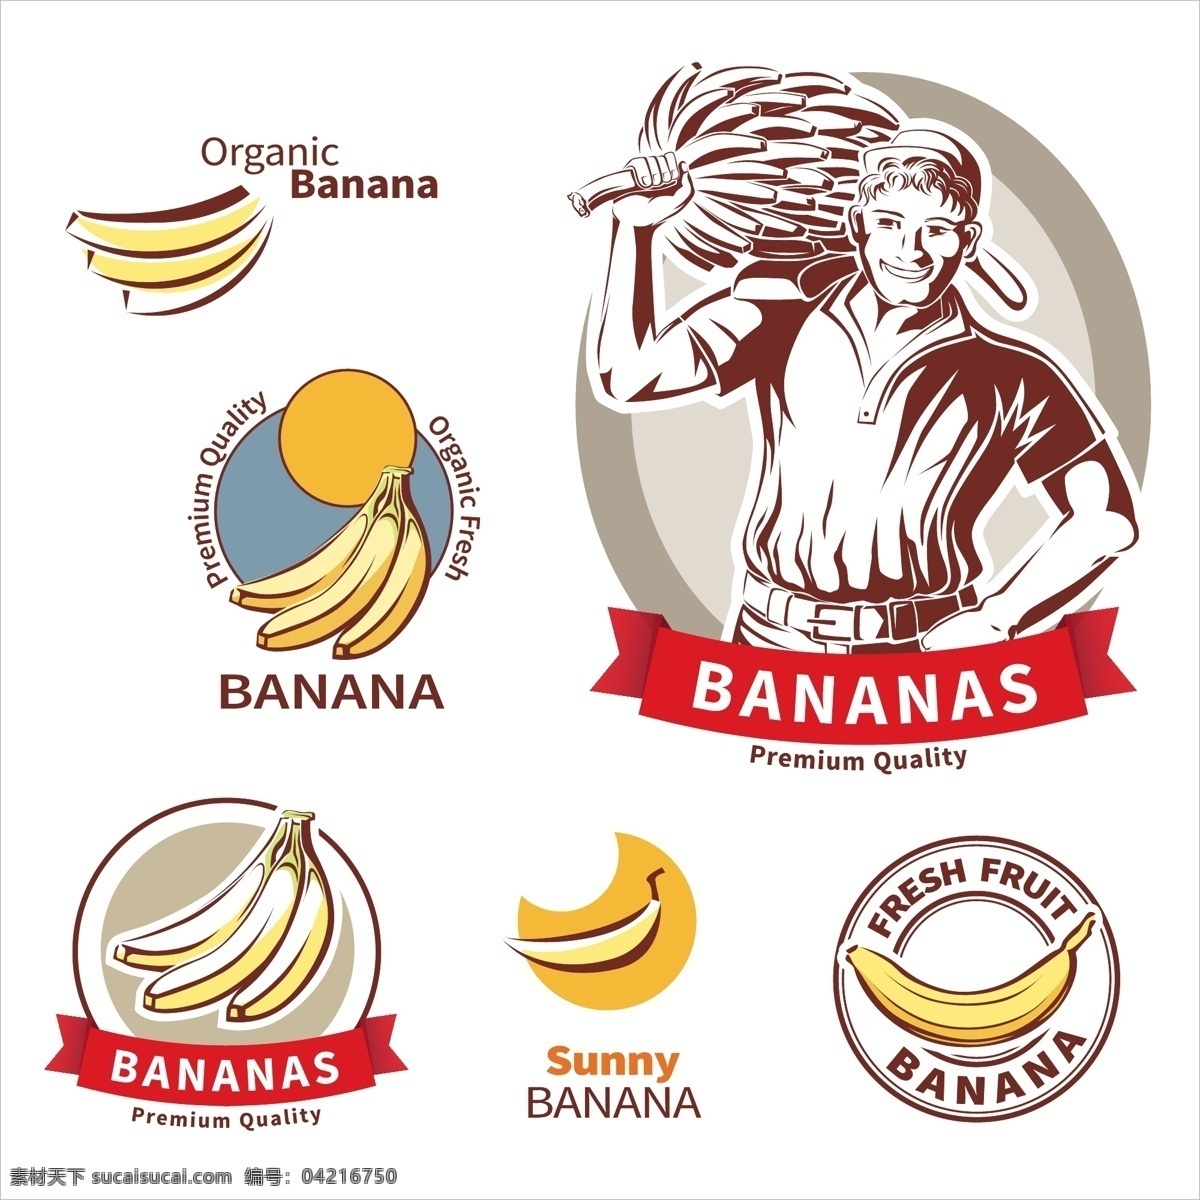 优质 香蕉 标签 矢量 图标 水果 丝带 横幅 条幅 装饰 果农 农民 人物 卡通 插画 食物 食品 美食 美味 背景 海报 画册 食品果蔬 生物世界